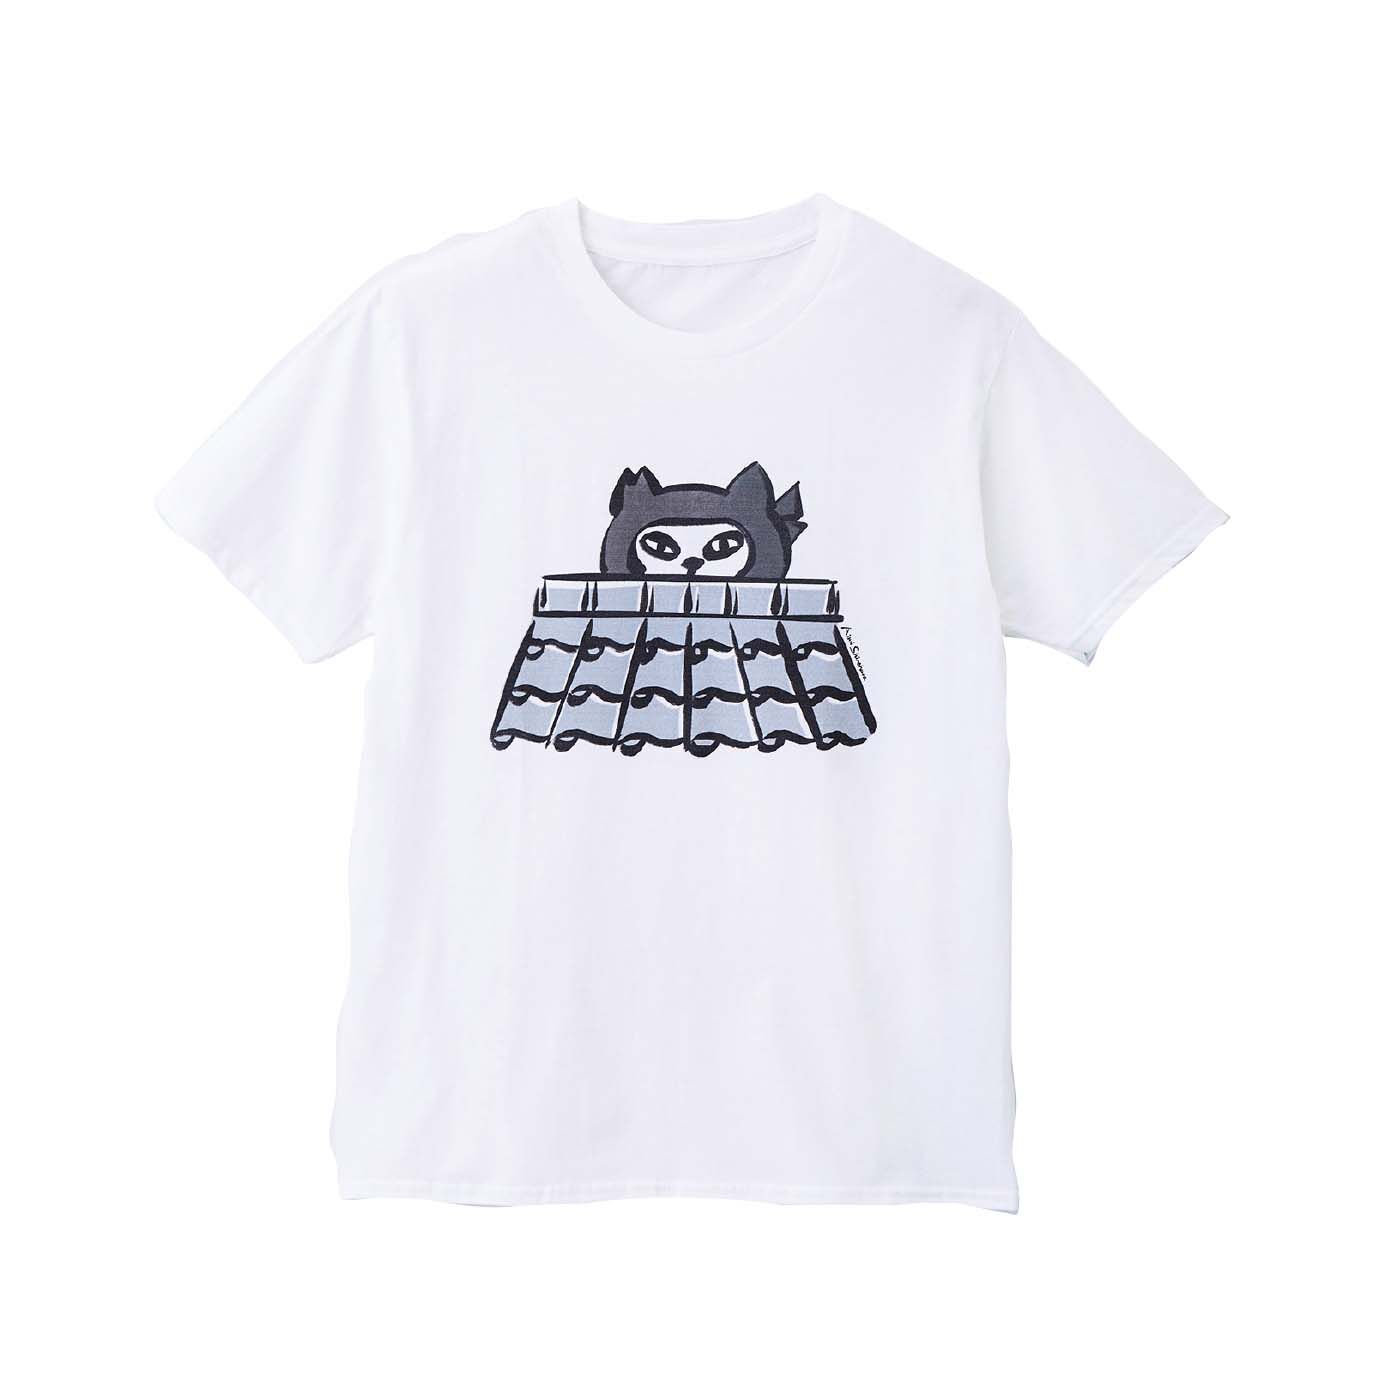 猫部|Aimi Shinohara×猫部　地域猫チャリティーTシャツ2022